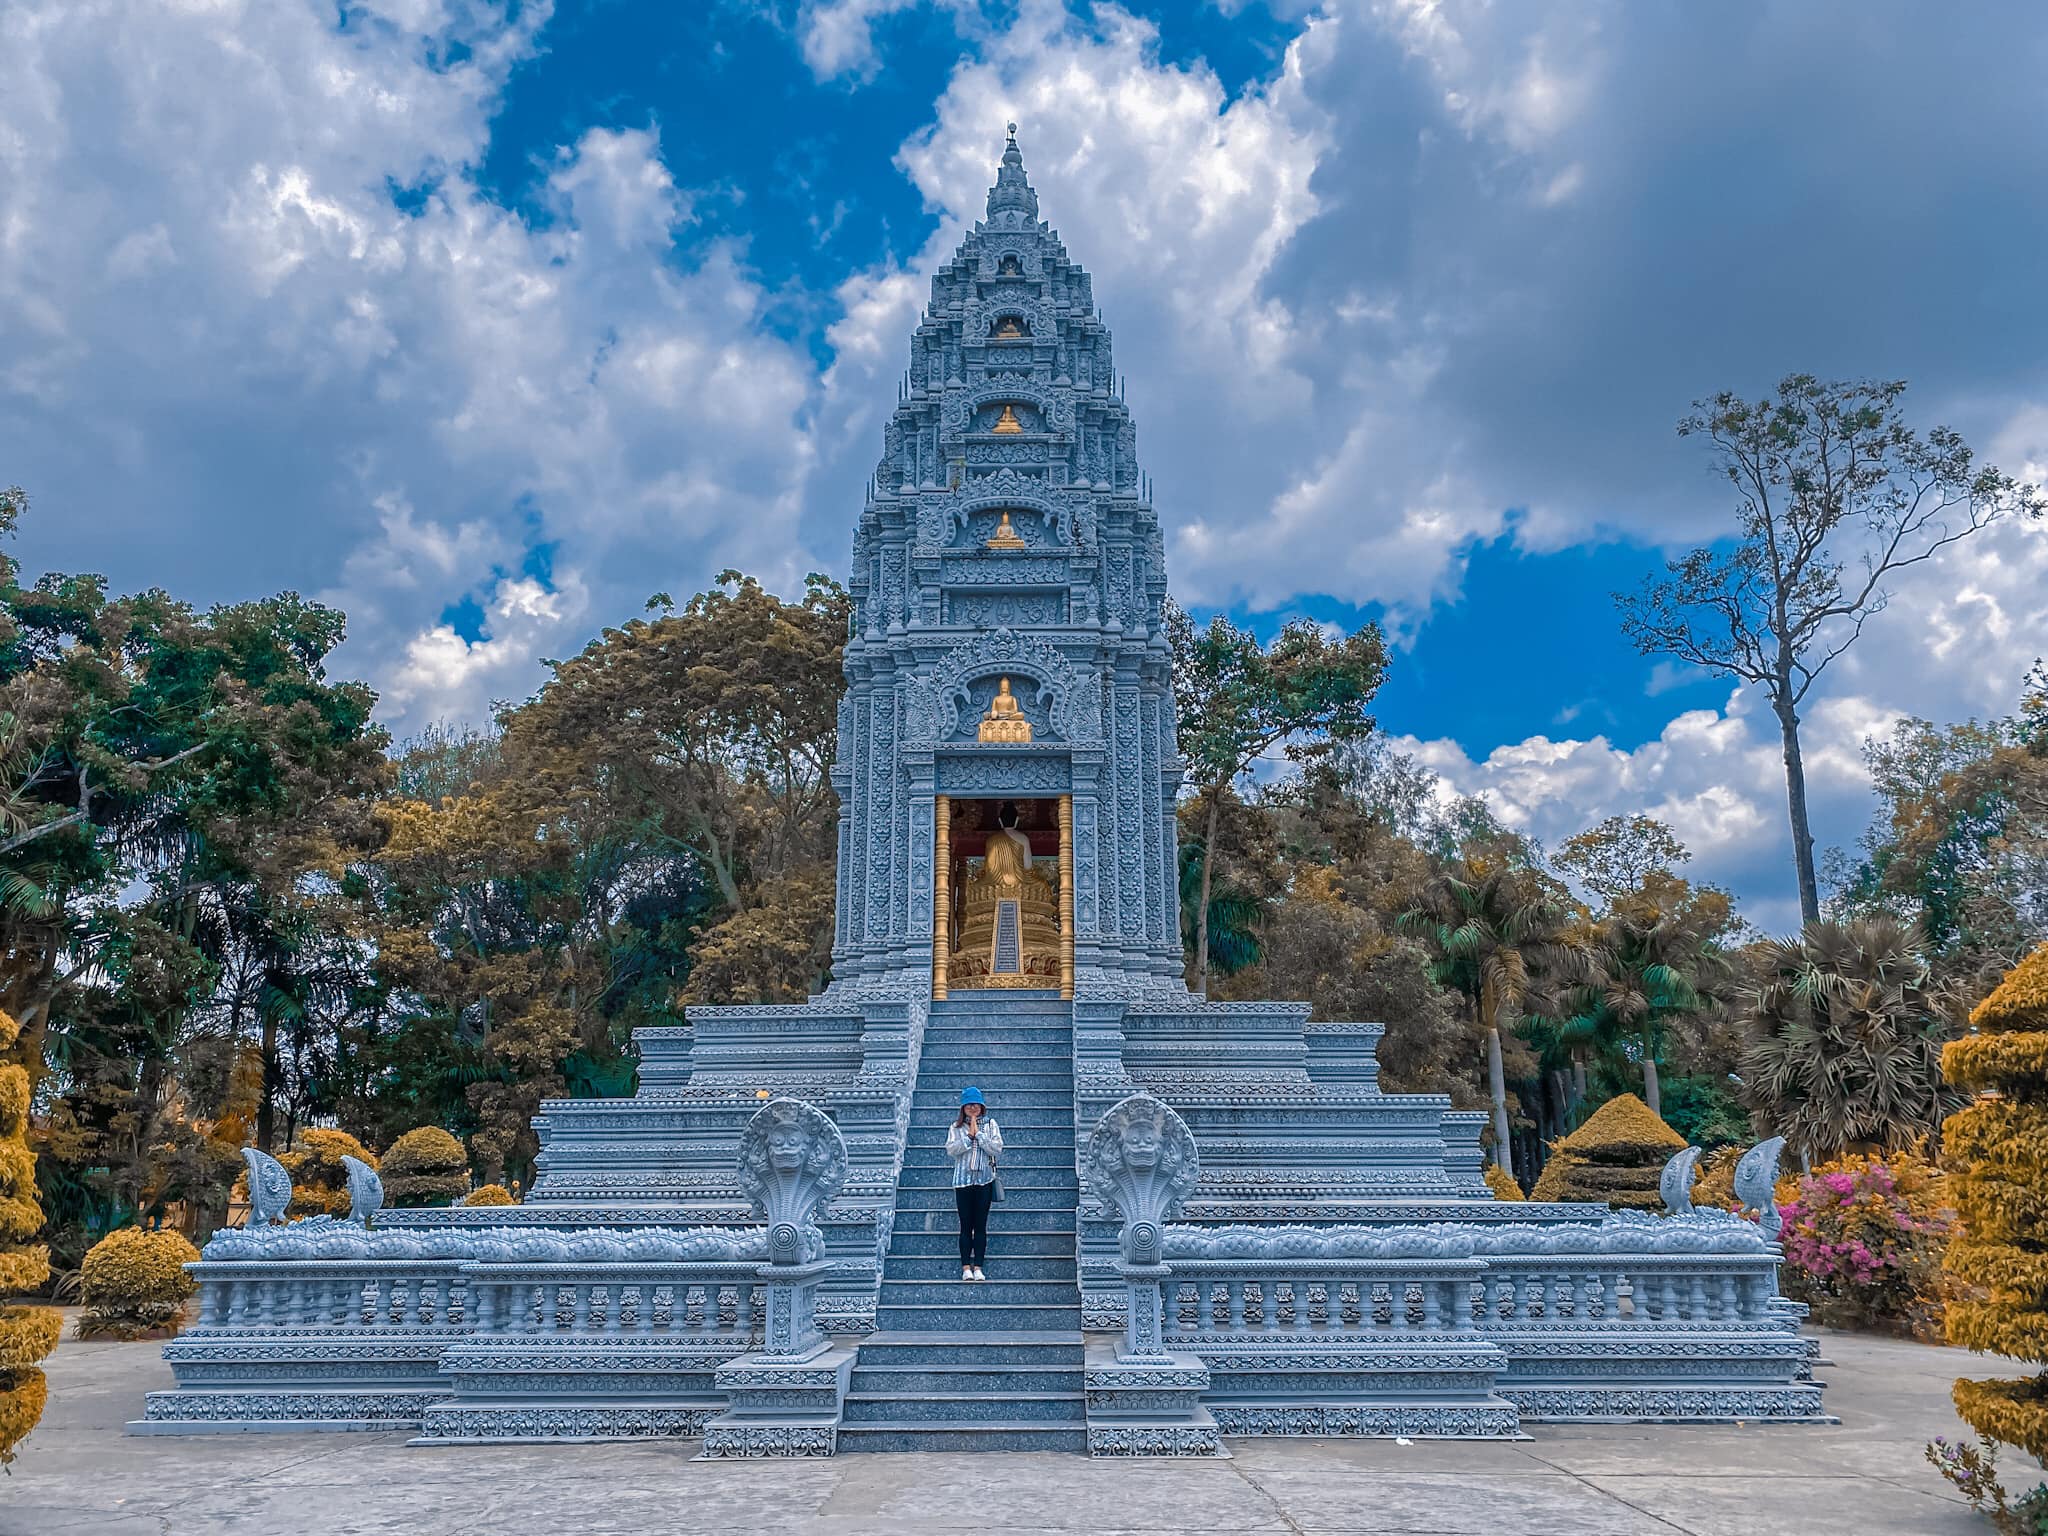 Chùa som rong ngôi chùa khmer có tượng phật nằm ở sóc trăng